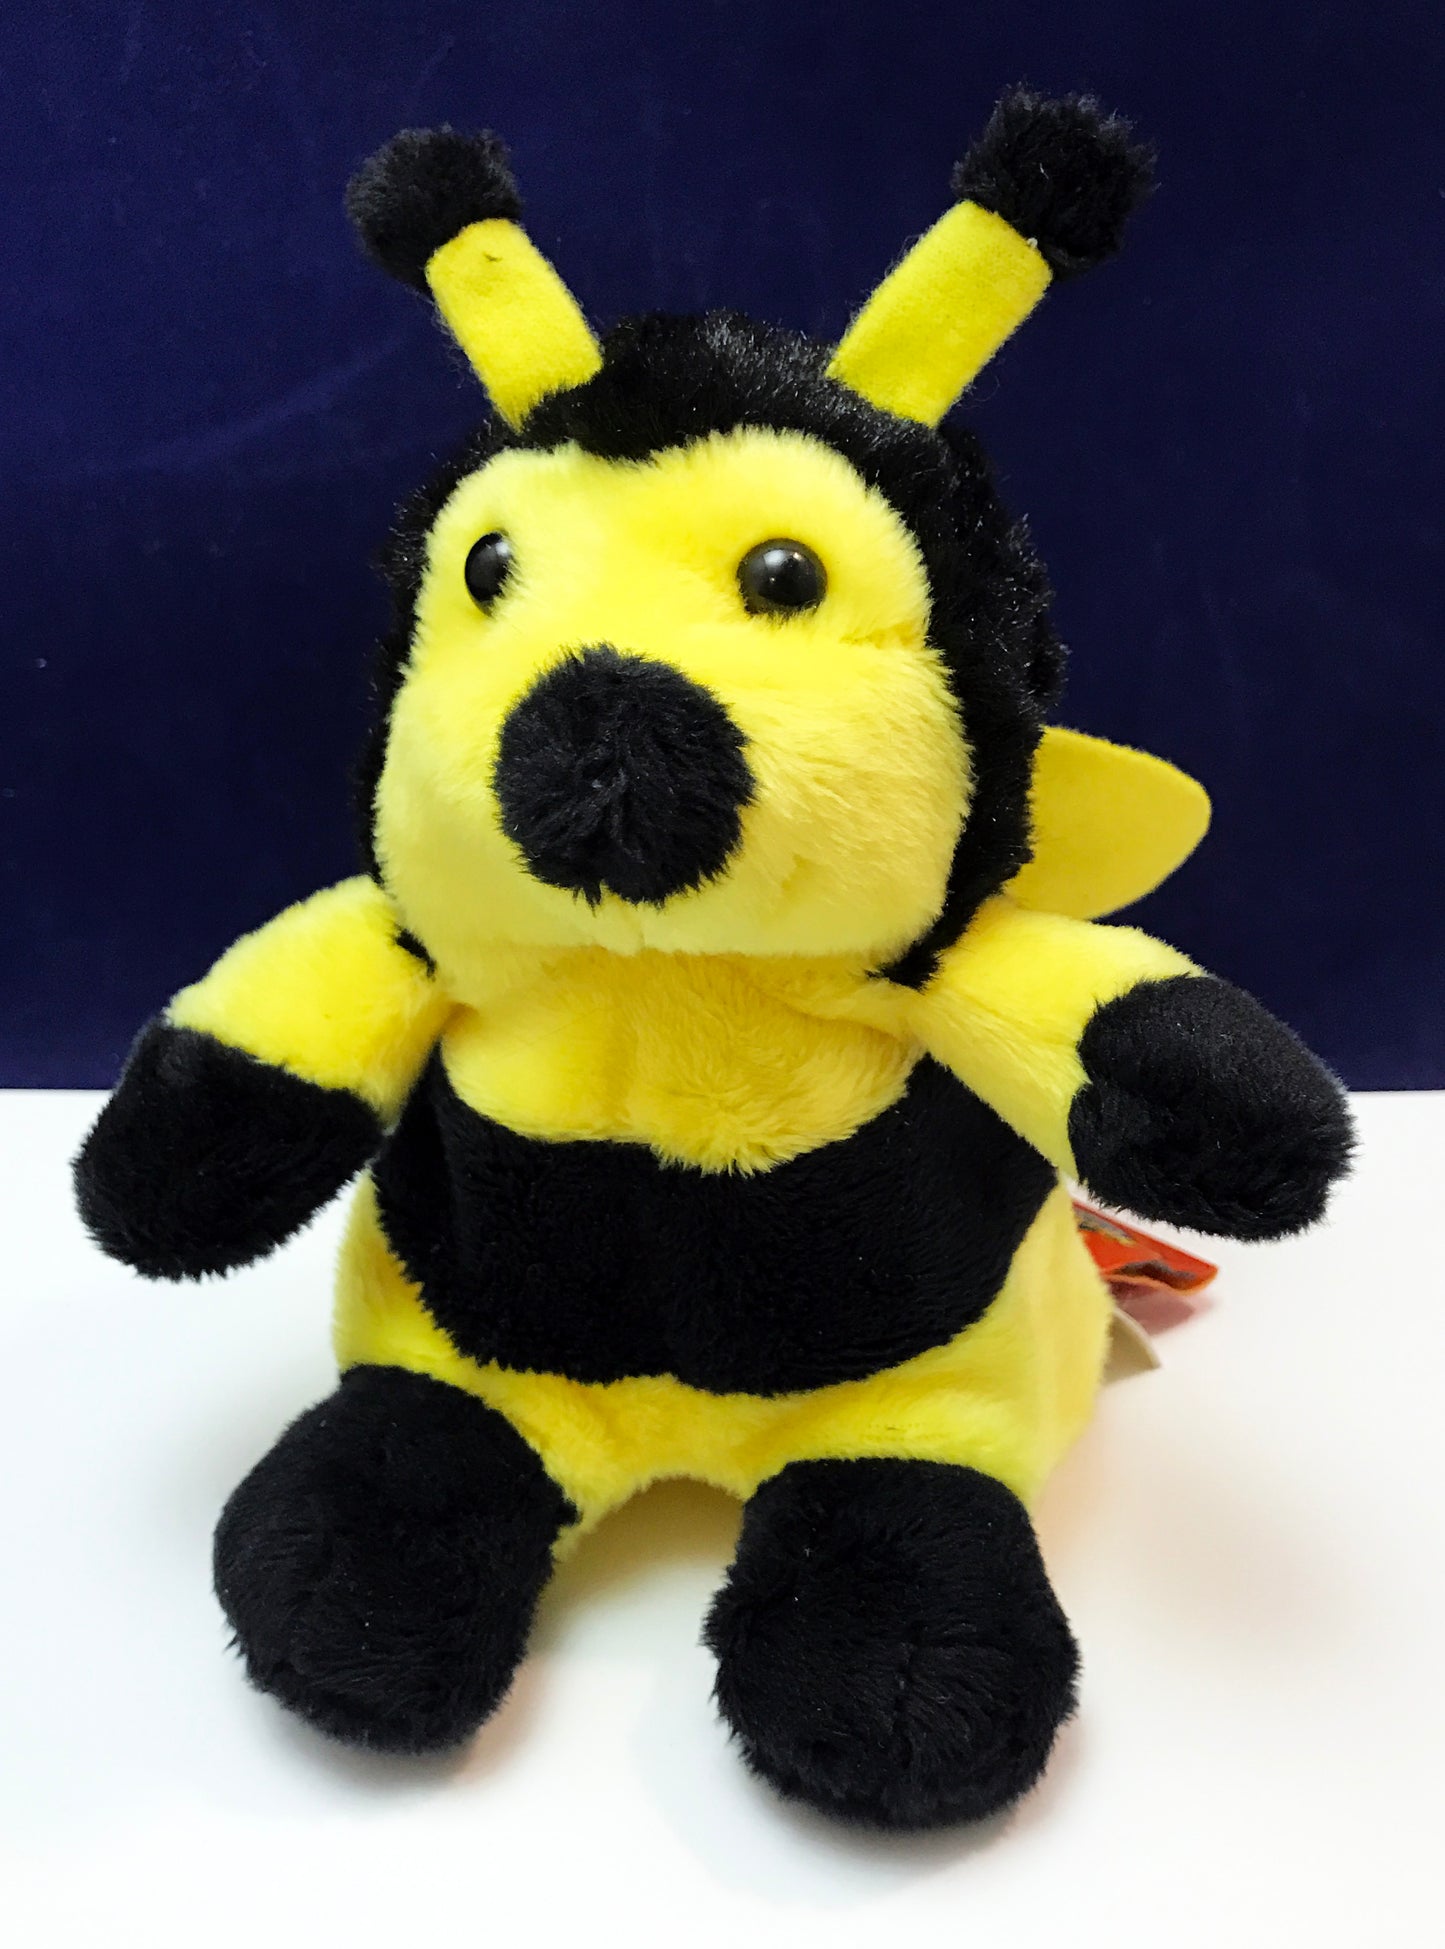 Plush honey bee toy